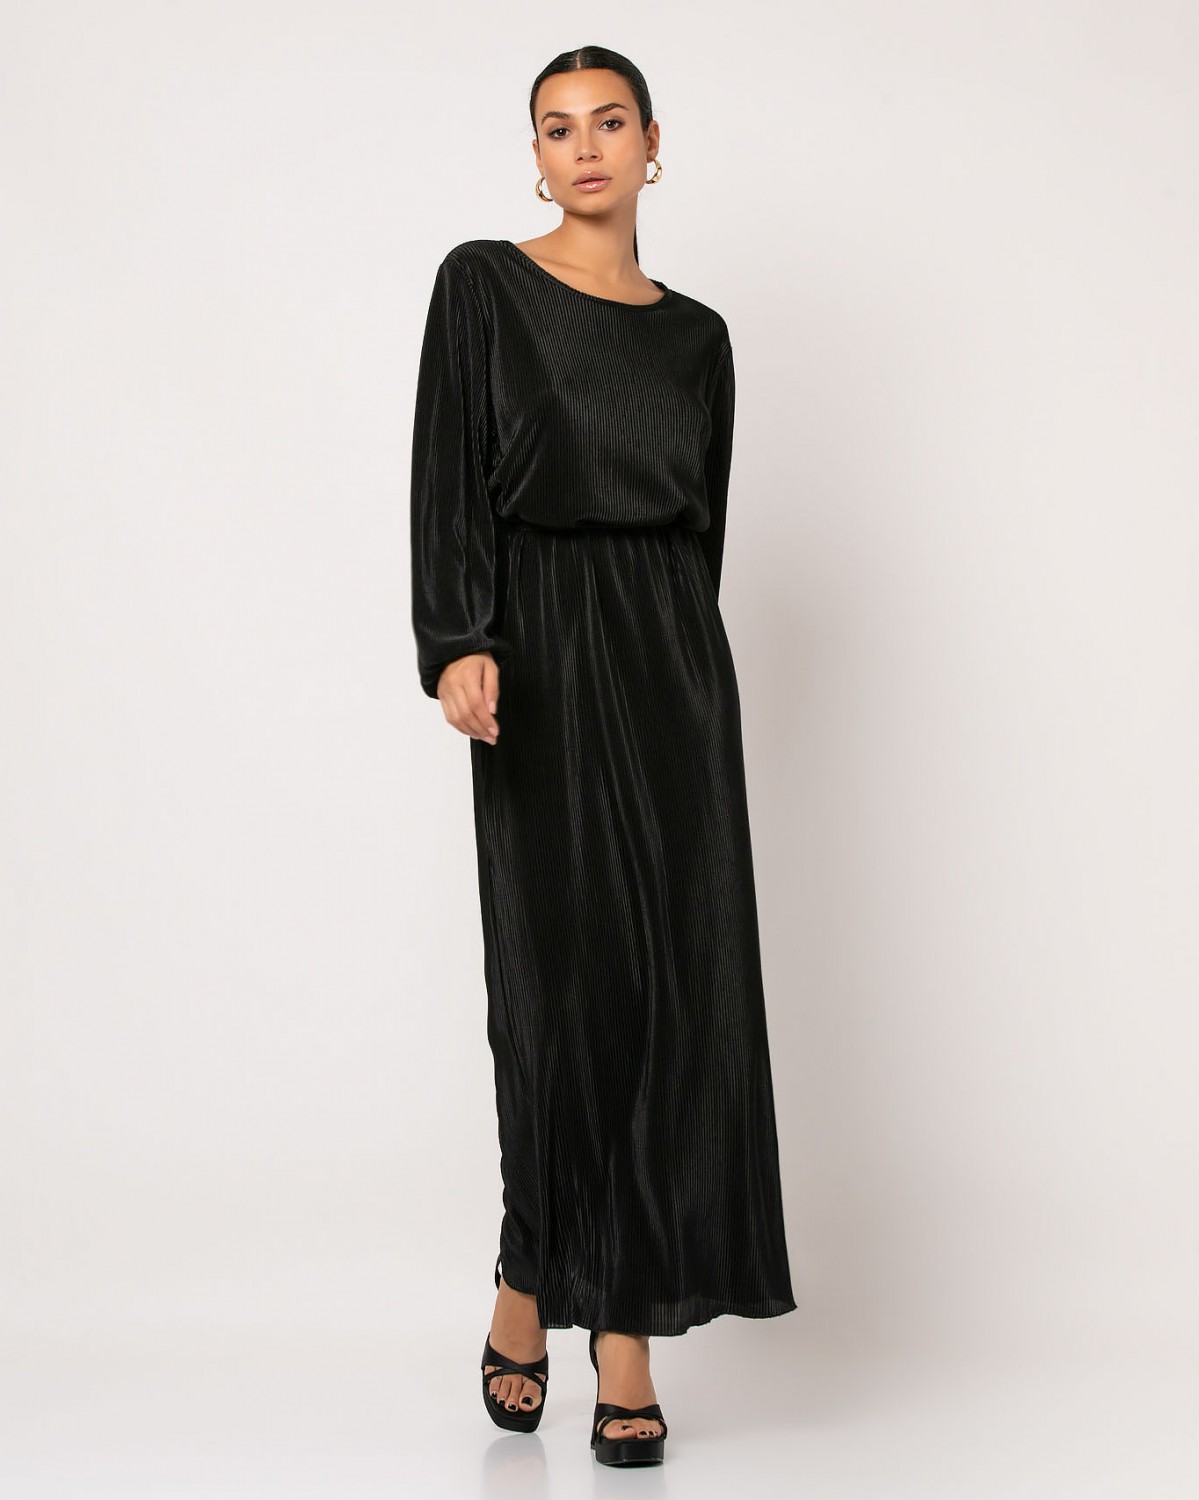 Φόρεμα maxi μακρυμάνικο με ζώνη στην μέση Μαύρο 